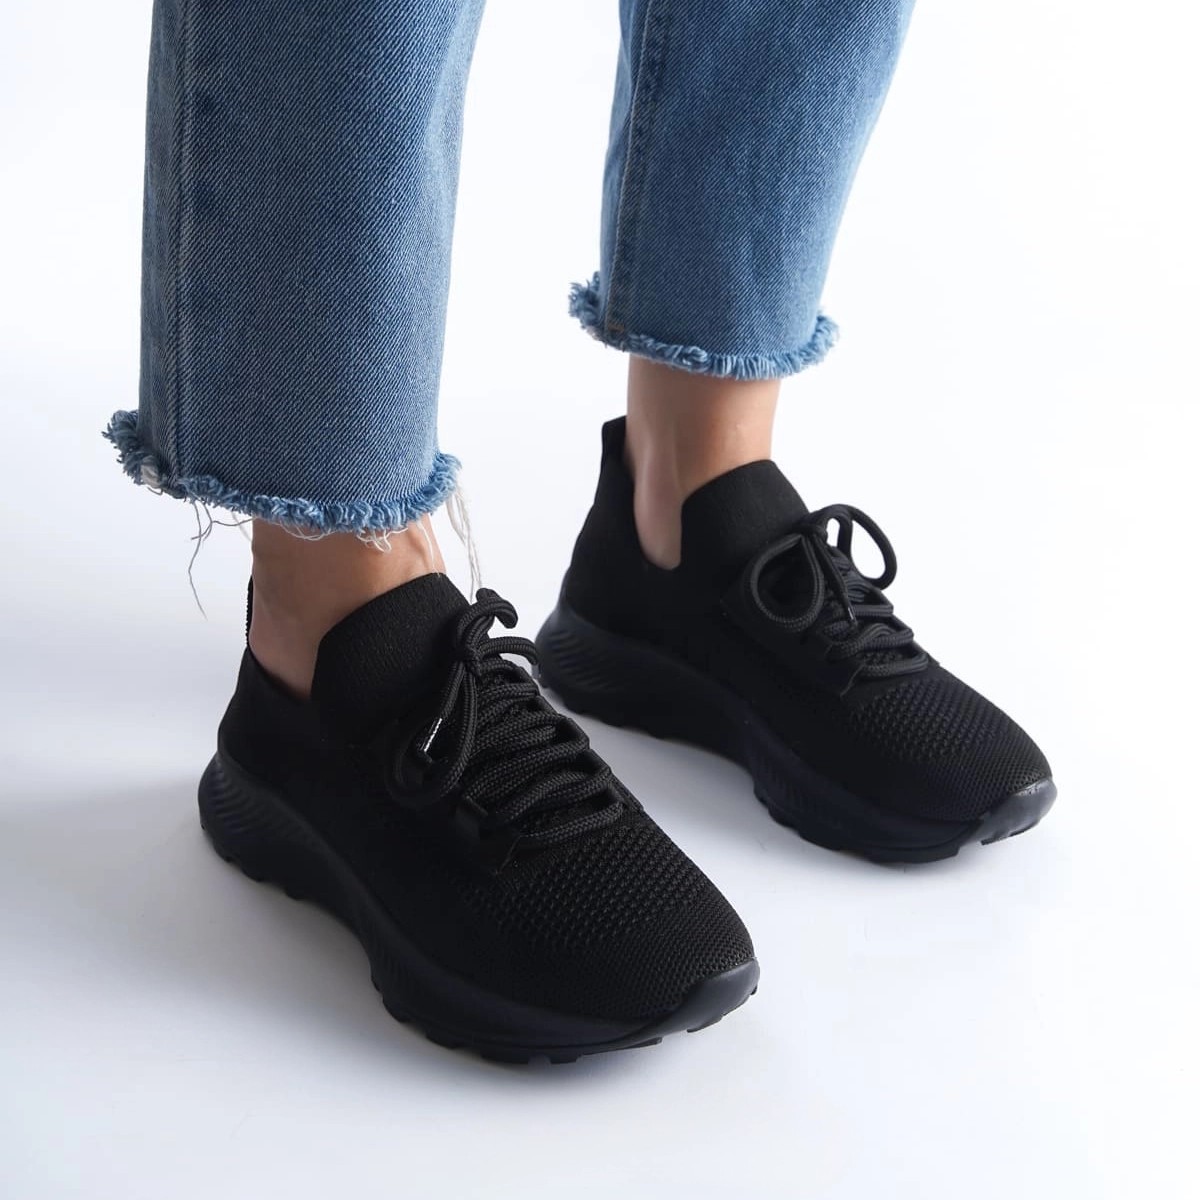 Tekstil Sneaker Spor Ayakkabı - Siyah